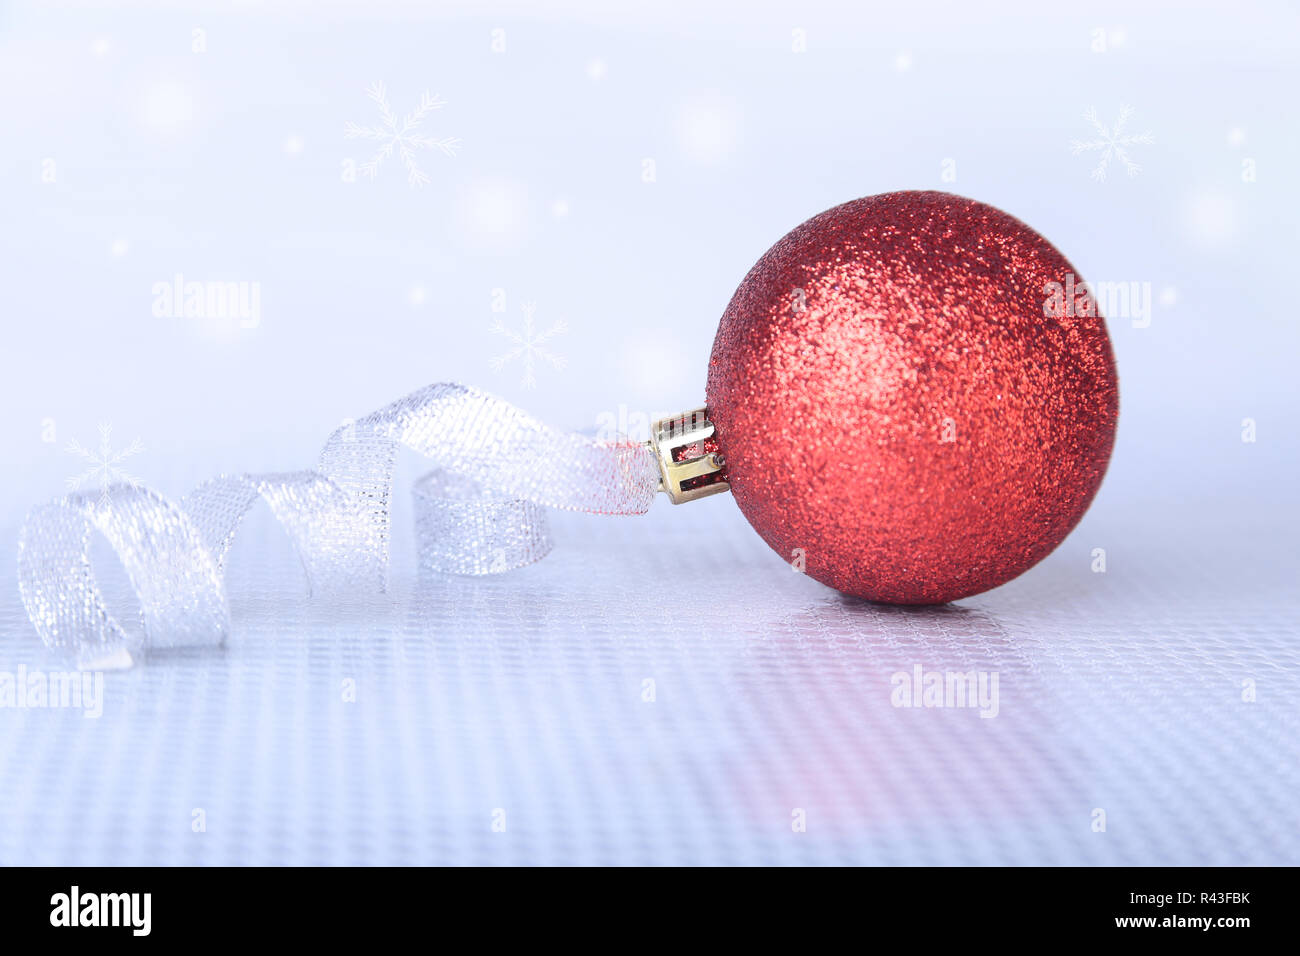 Weihnachten Hintergrund mit roten Ball und frohe Weihnachten Band auf Schnee mit Schneeflocken fallen von einem blauen Himmel Stockfoto